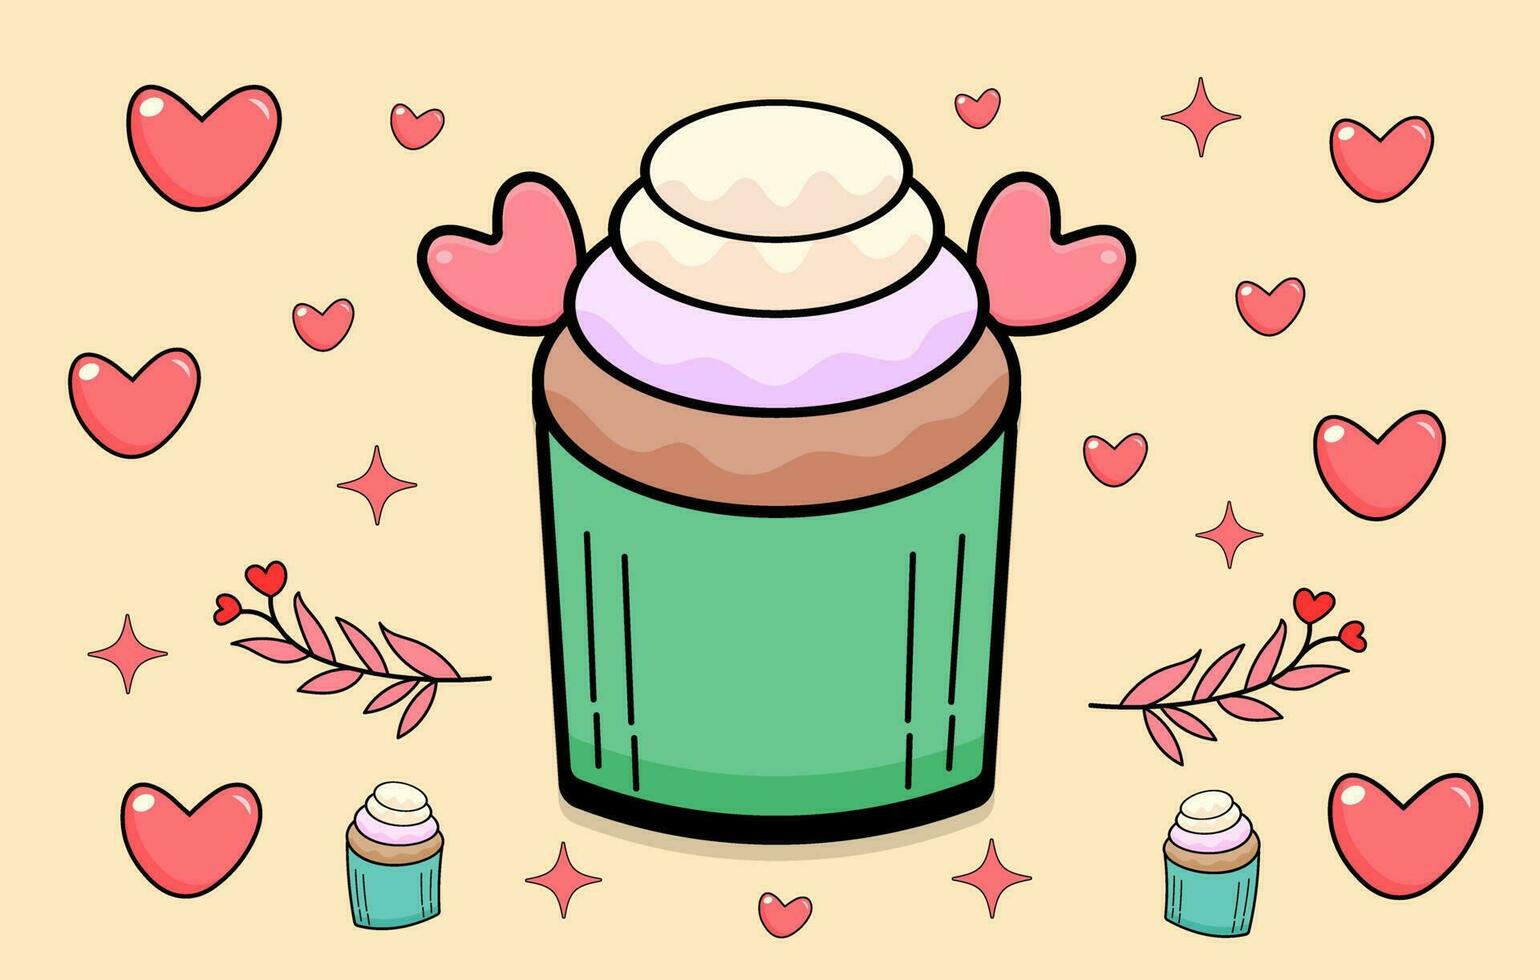 cupcake rose avec un coeur d'amour gratuit, illustration vectorielle de vecteur de couleur de cupcake, isolé, objet, vecteur, plat, style dessin animé